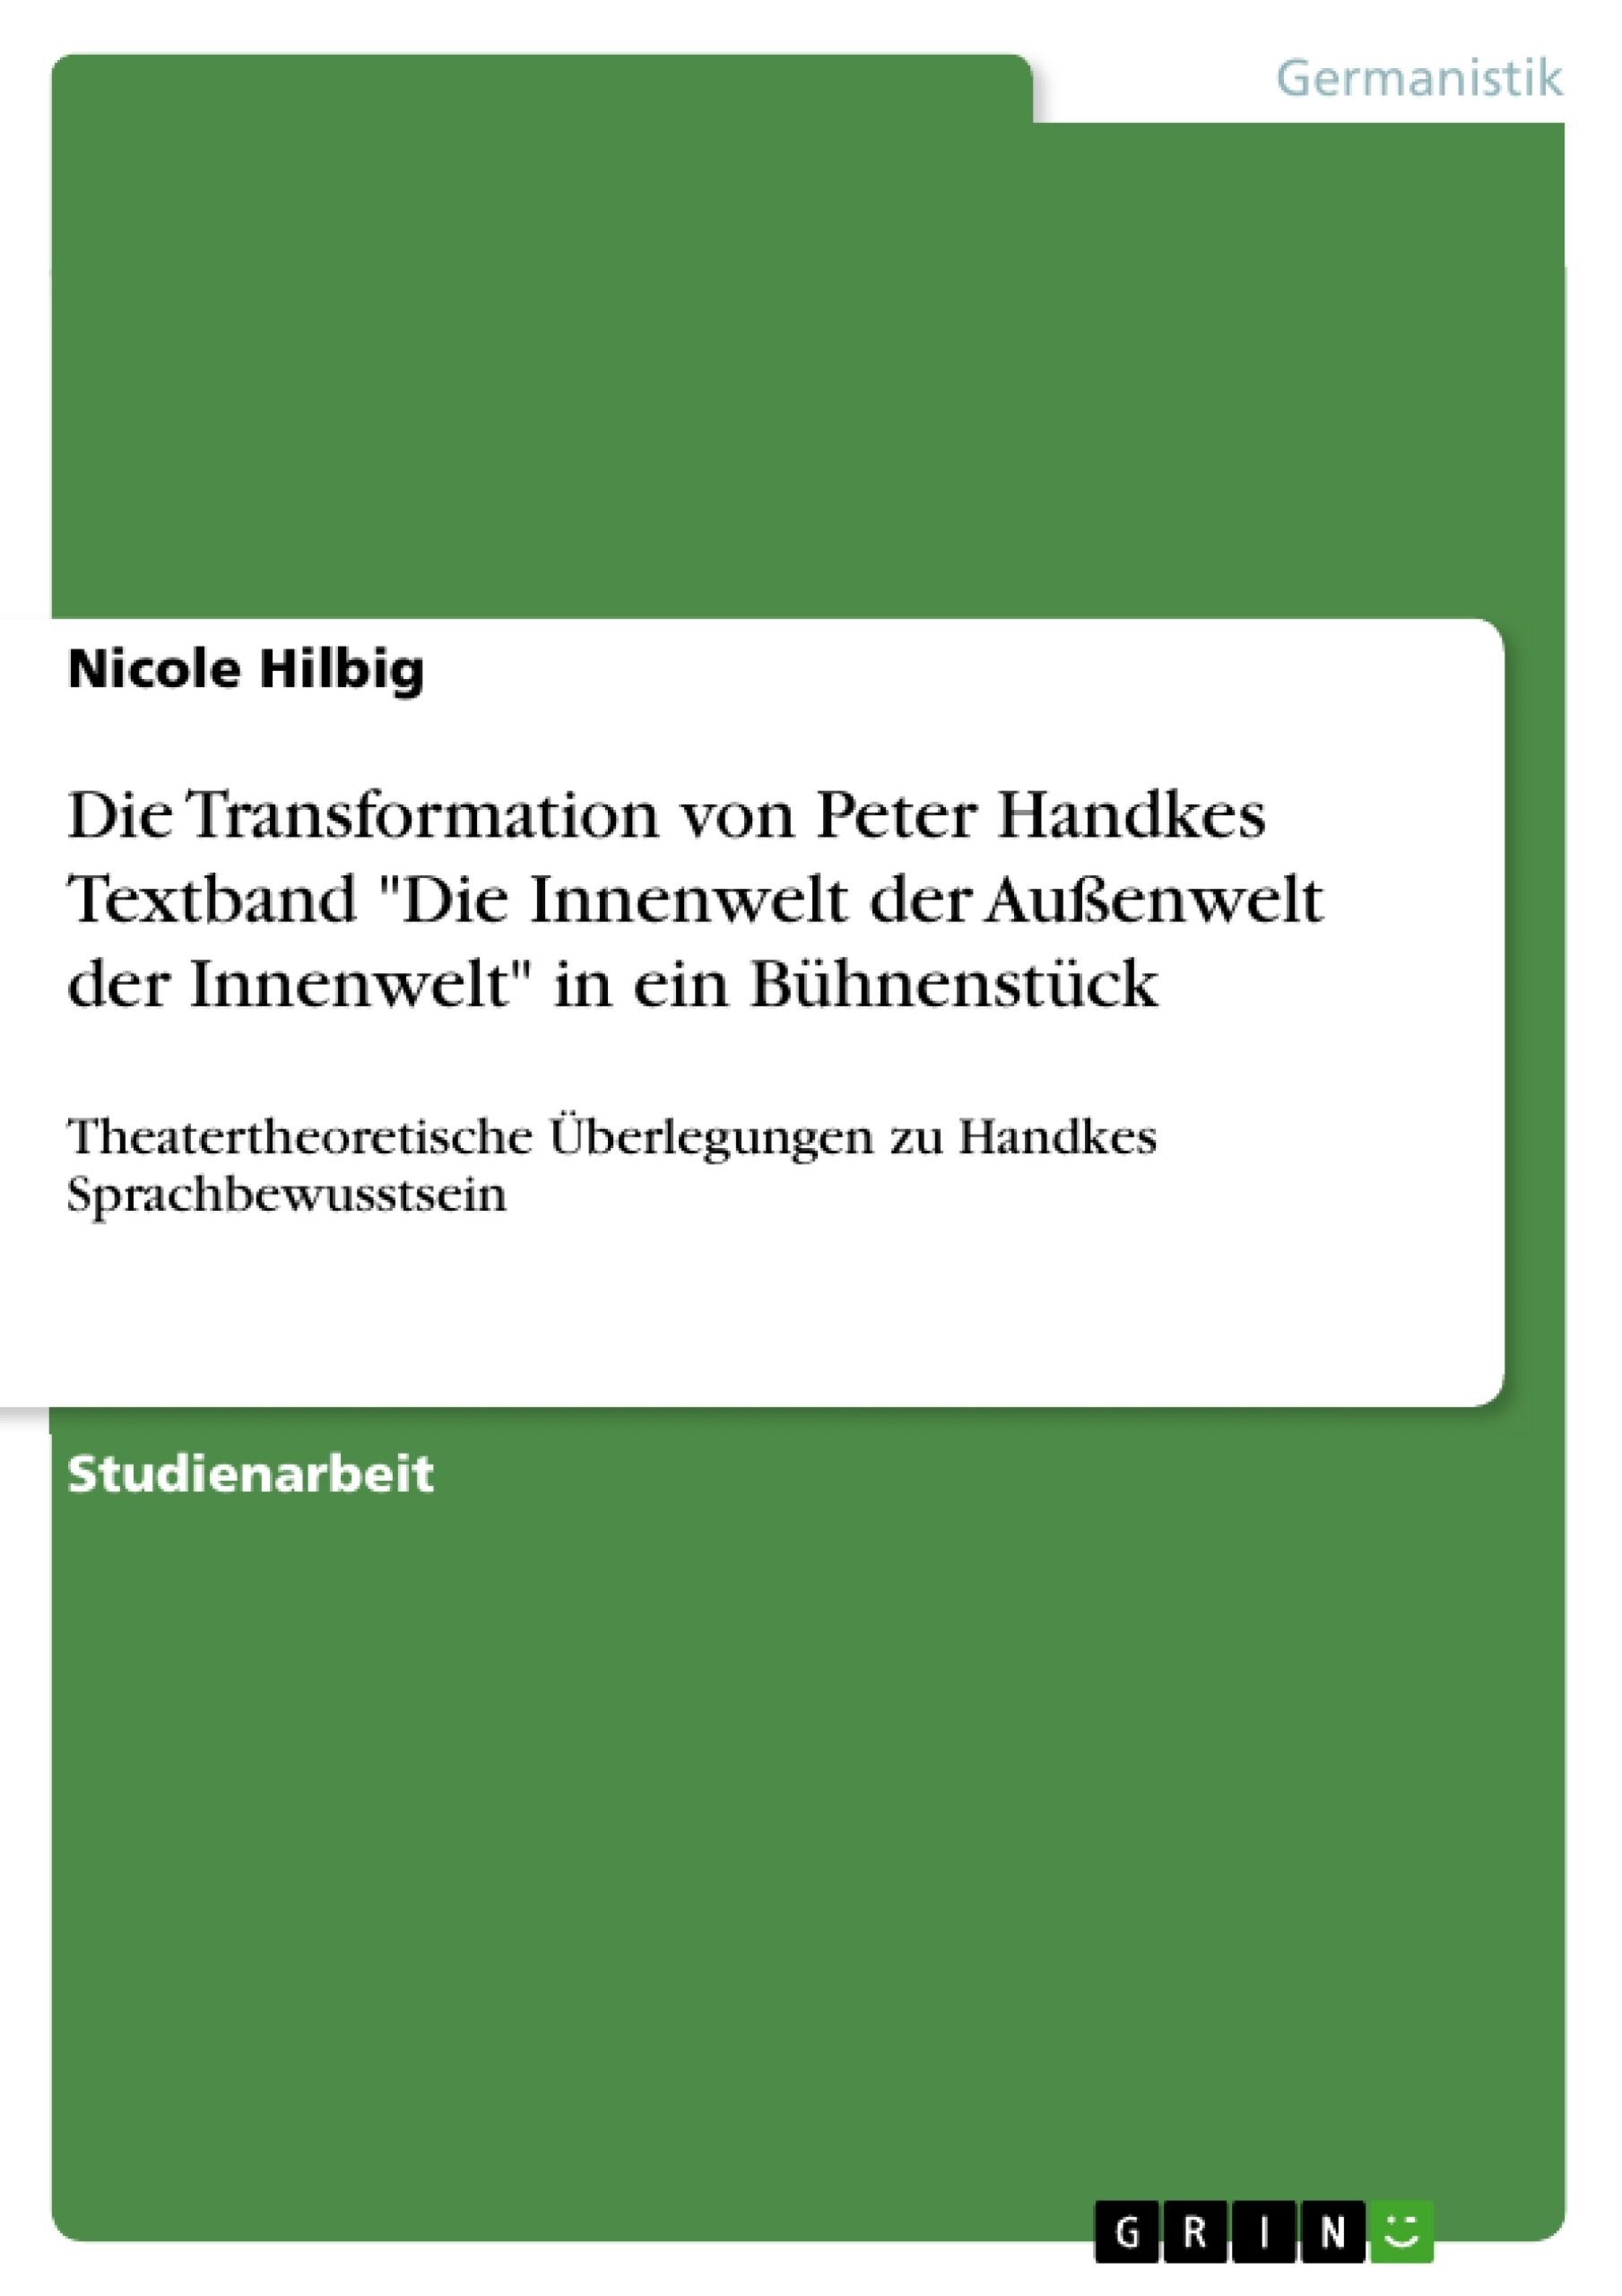 Titre: Die Transformation von Peter Handkes Textband "Die Innenwelt der Außenwelt der Innenwelt" in ein Bühnenstück